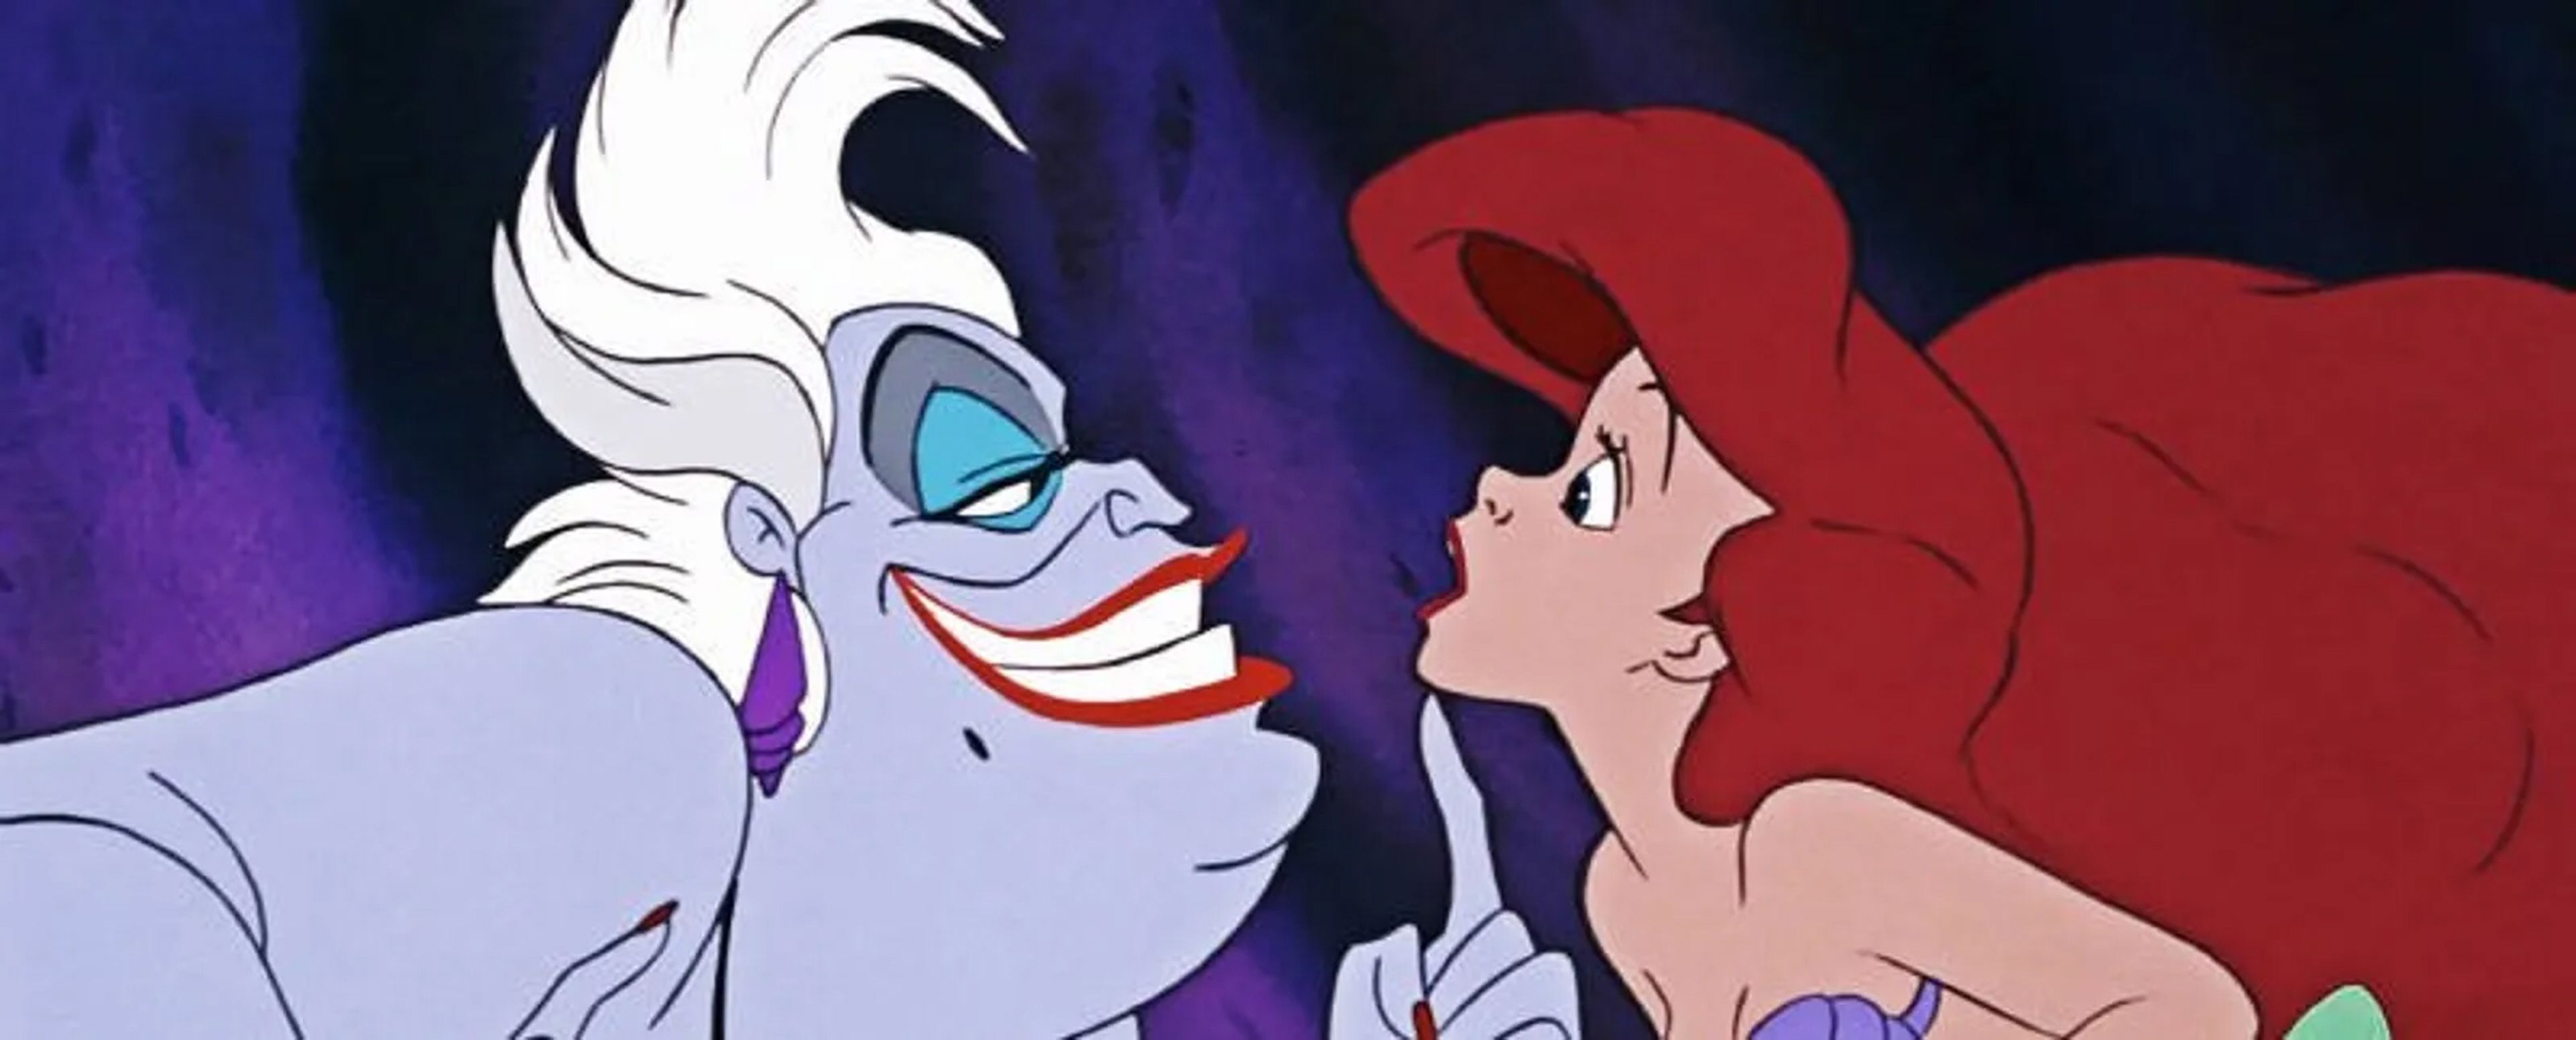 Ariel y Ursula - La sirenita